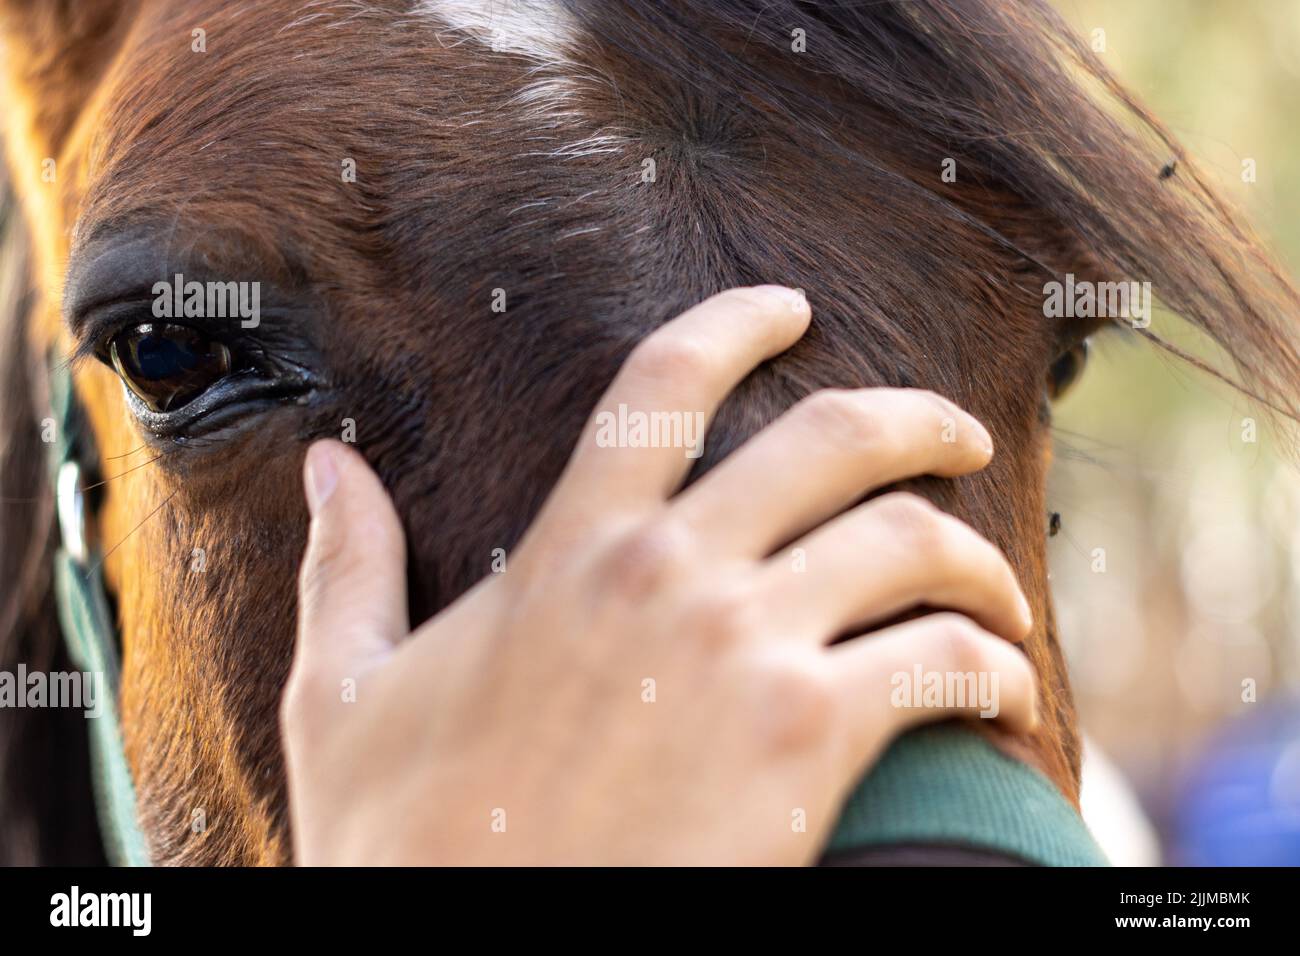 Primer plano de una mano humana tocando la cabeza de un caballo marrón Foto de stock